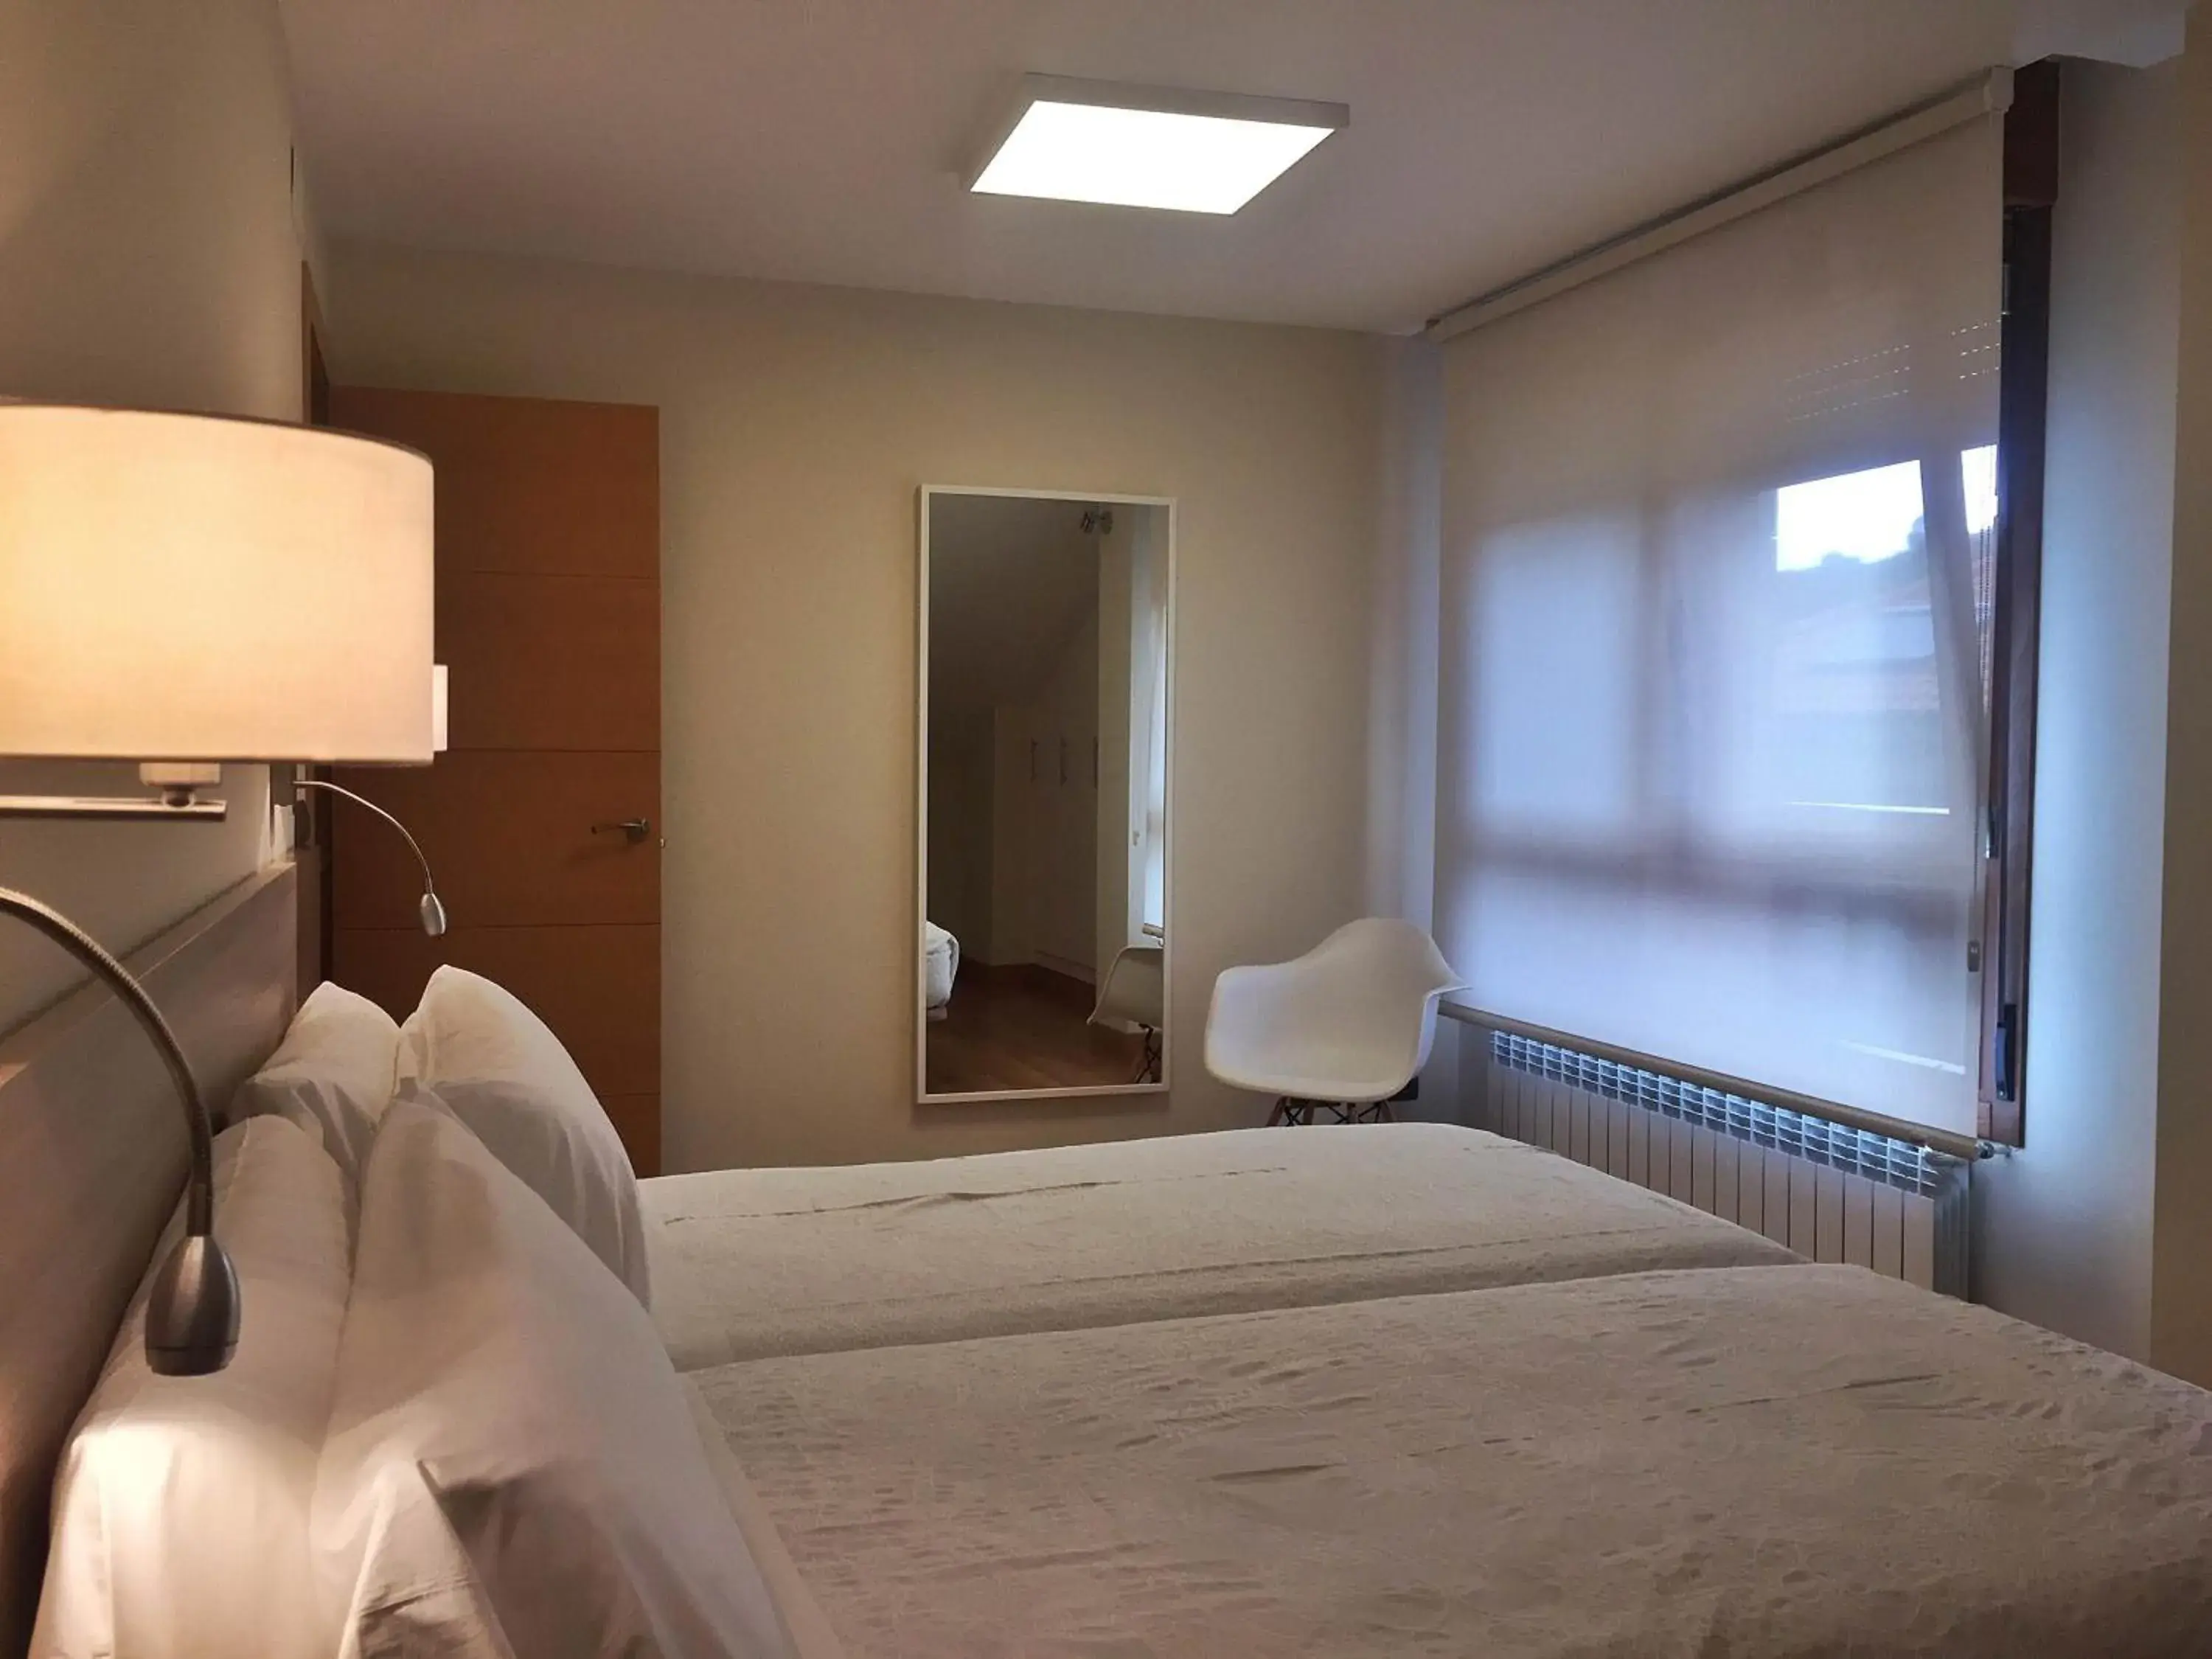 Bed, Room Photo in Apartamentos Albatros